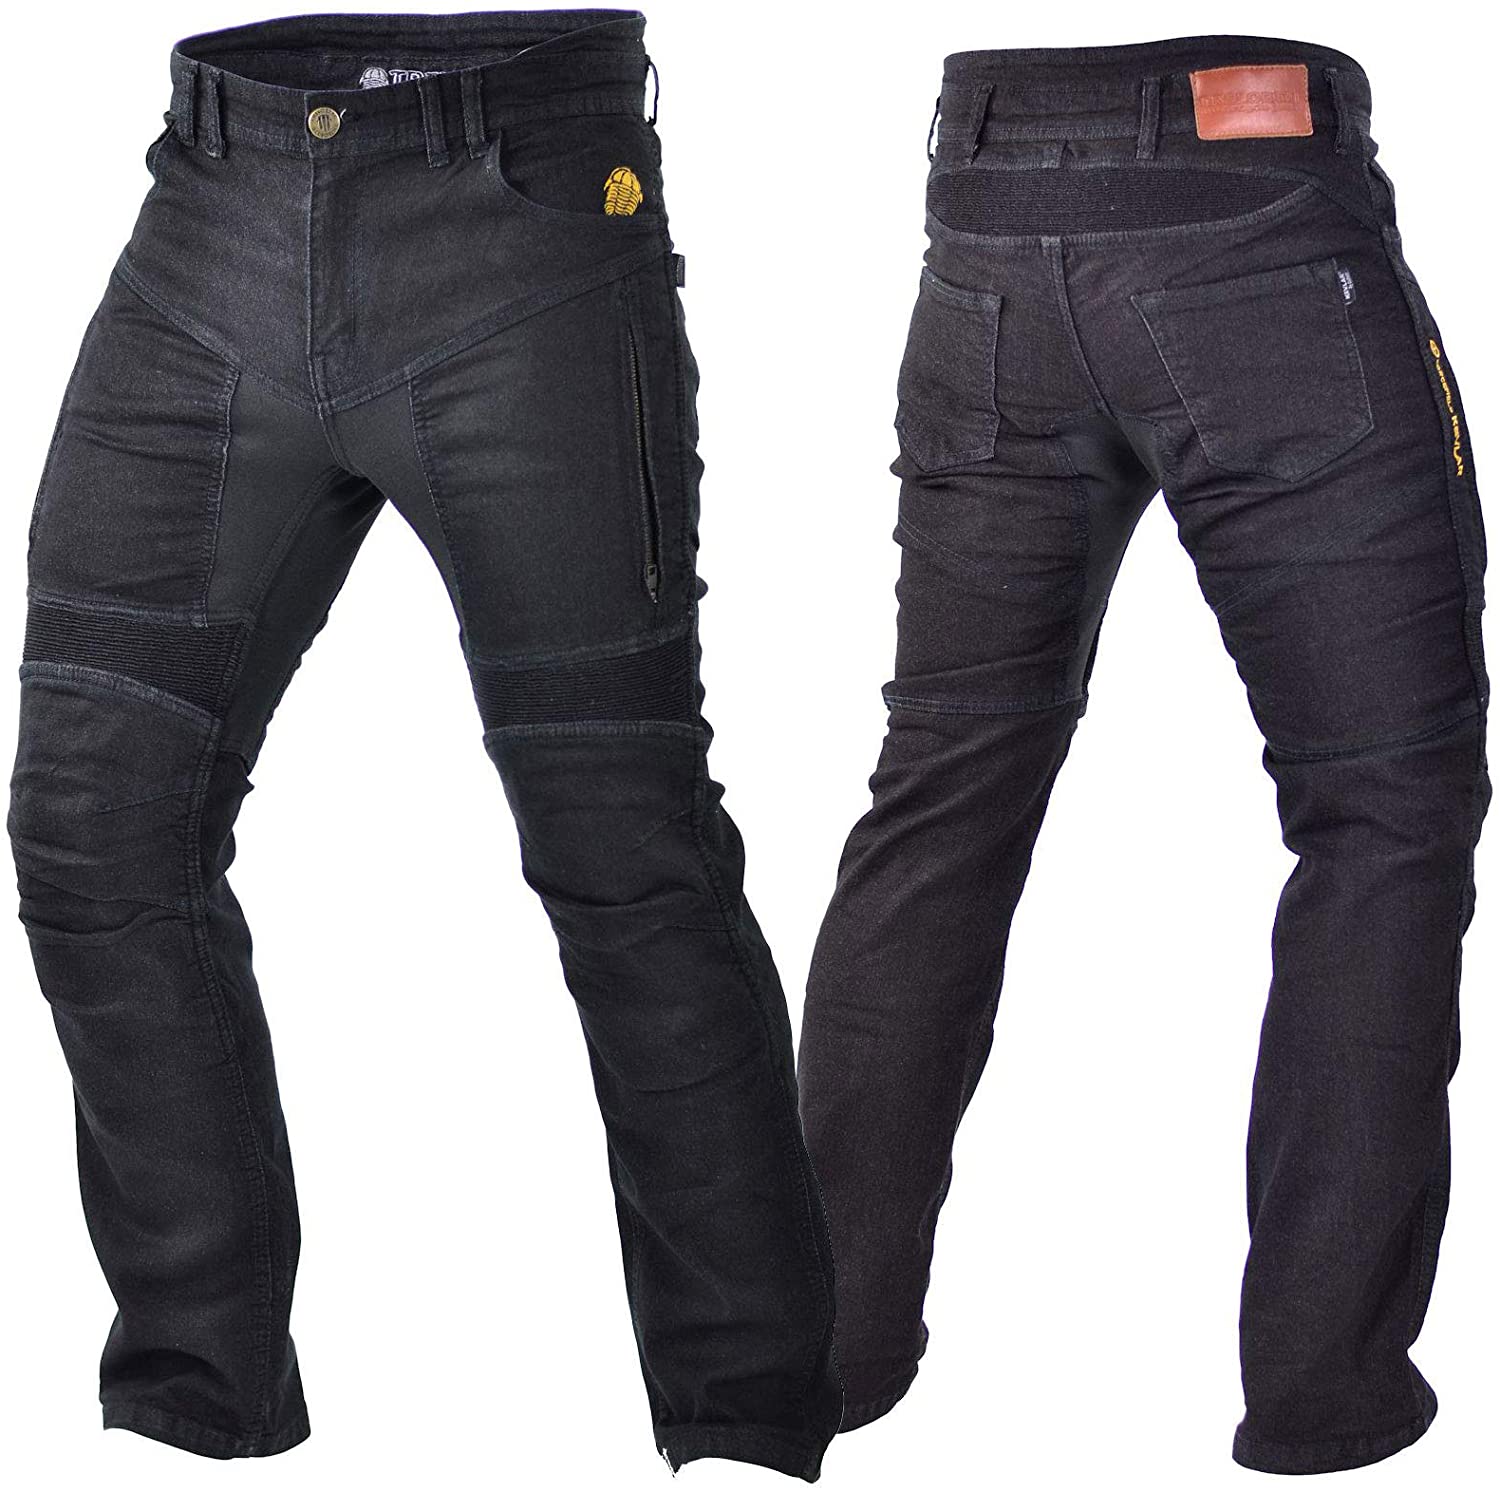 Trilobite motorcycle Men jeans